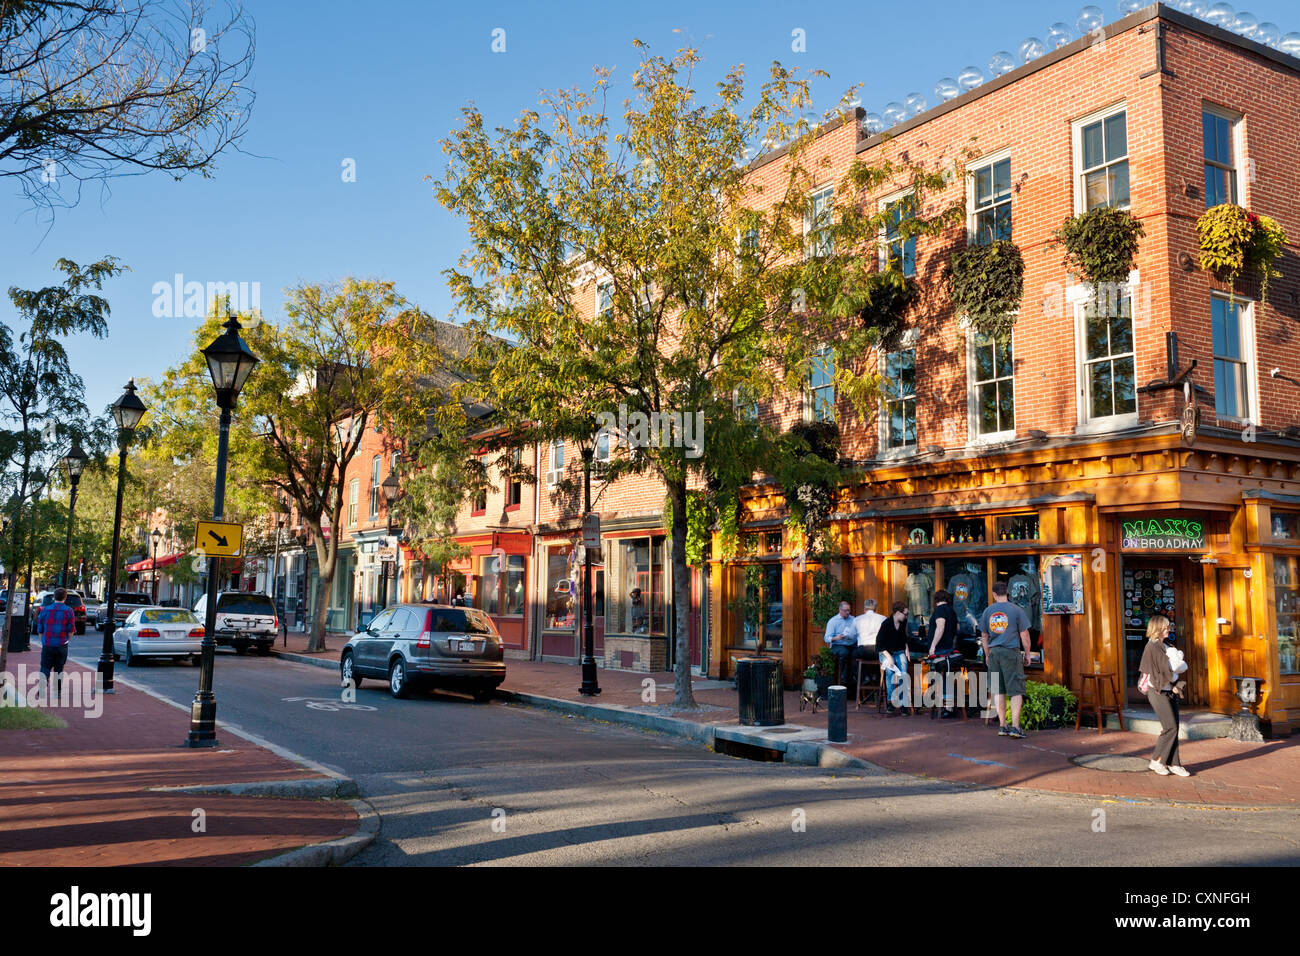 Ein angenehmer Tag in Fells Point, Baltimore, Maryland, findet Freunde trinken im Freien. Stockfoto